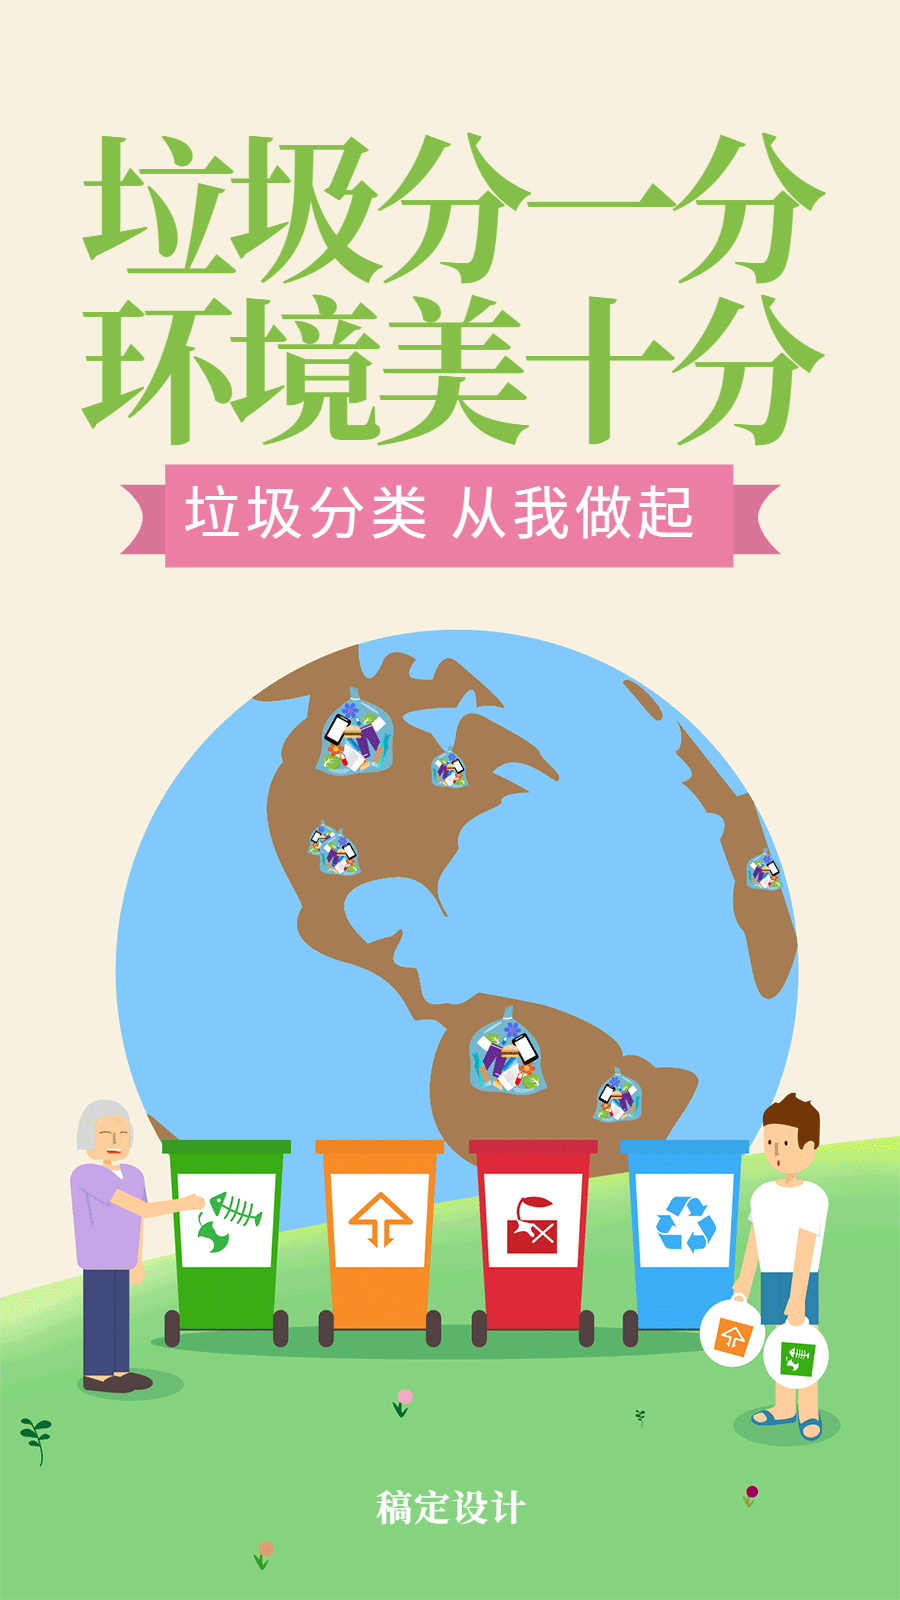 垃圾分类保护环境热点动态海报预览效果